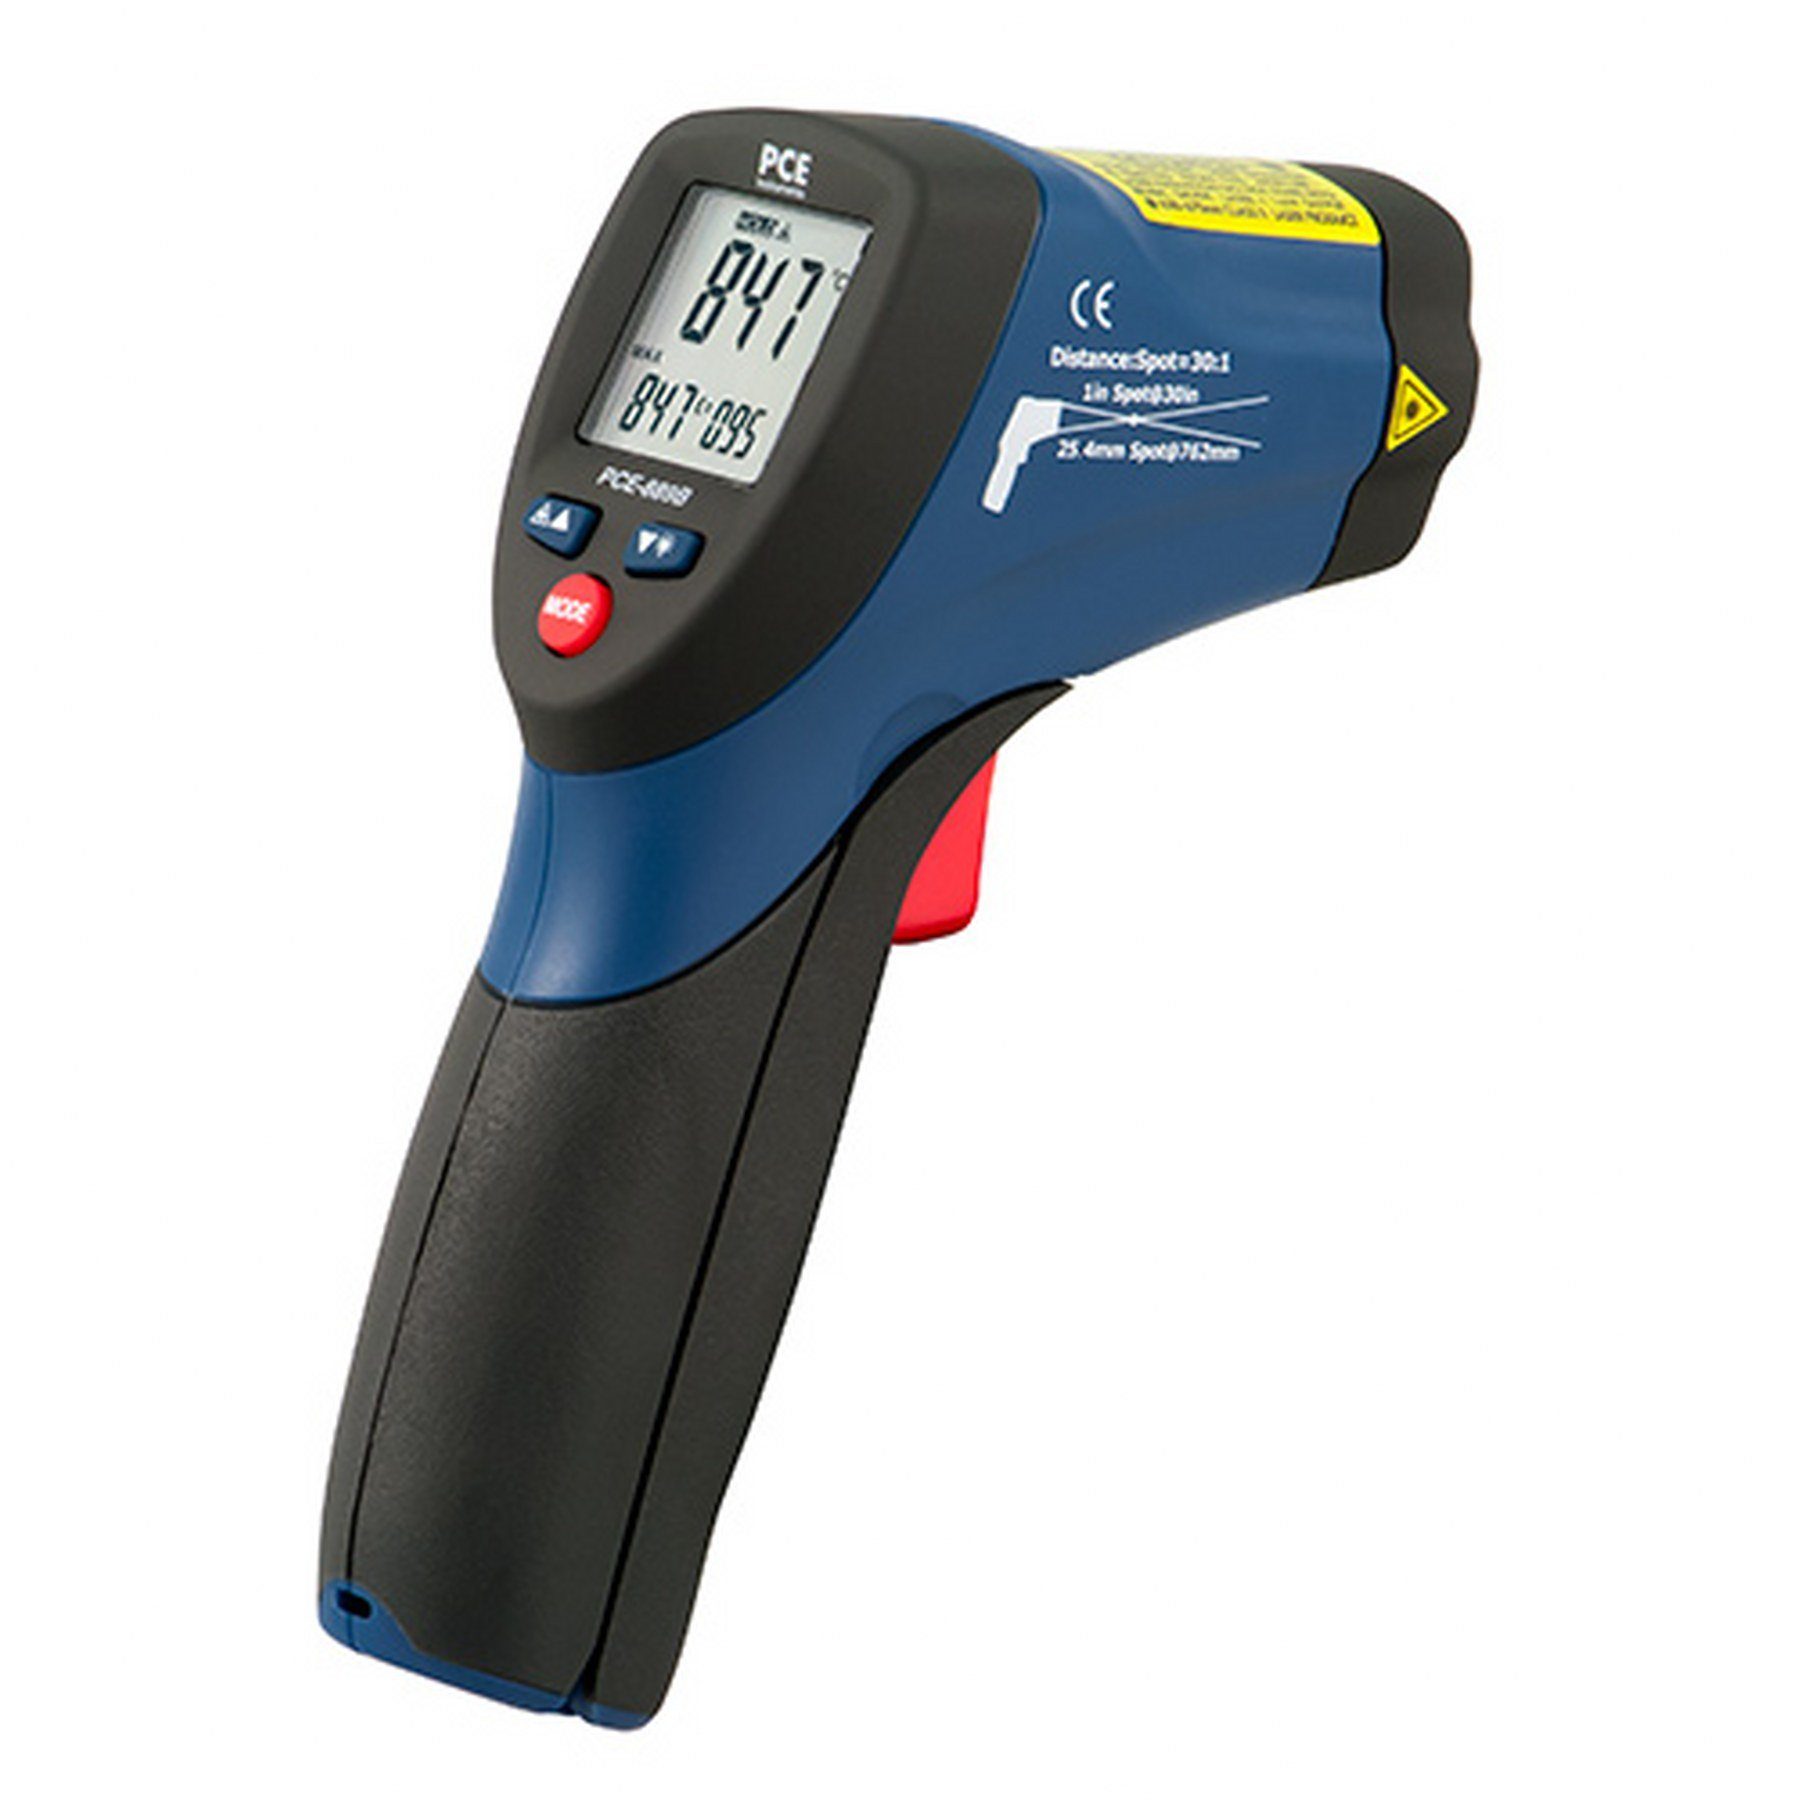 PCE Instruments Gartenthermometer Infrarotthermometer PCE-889B zur berührungslosen Temperaturerfassung